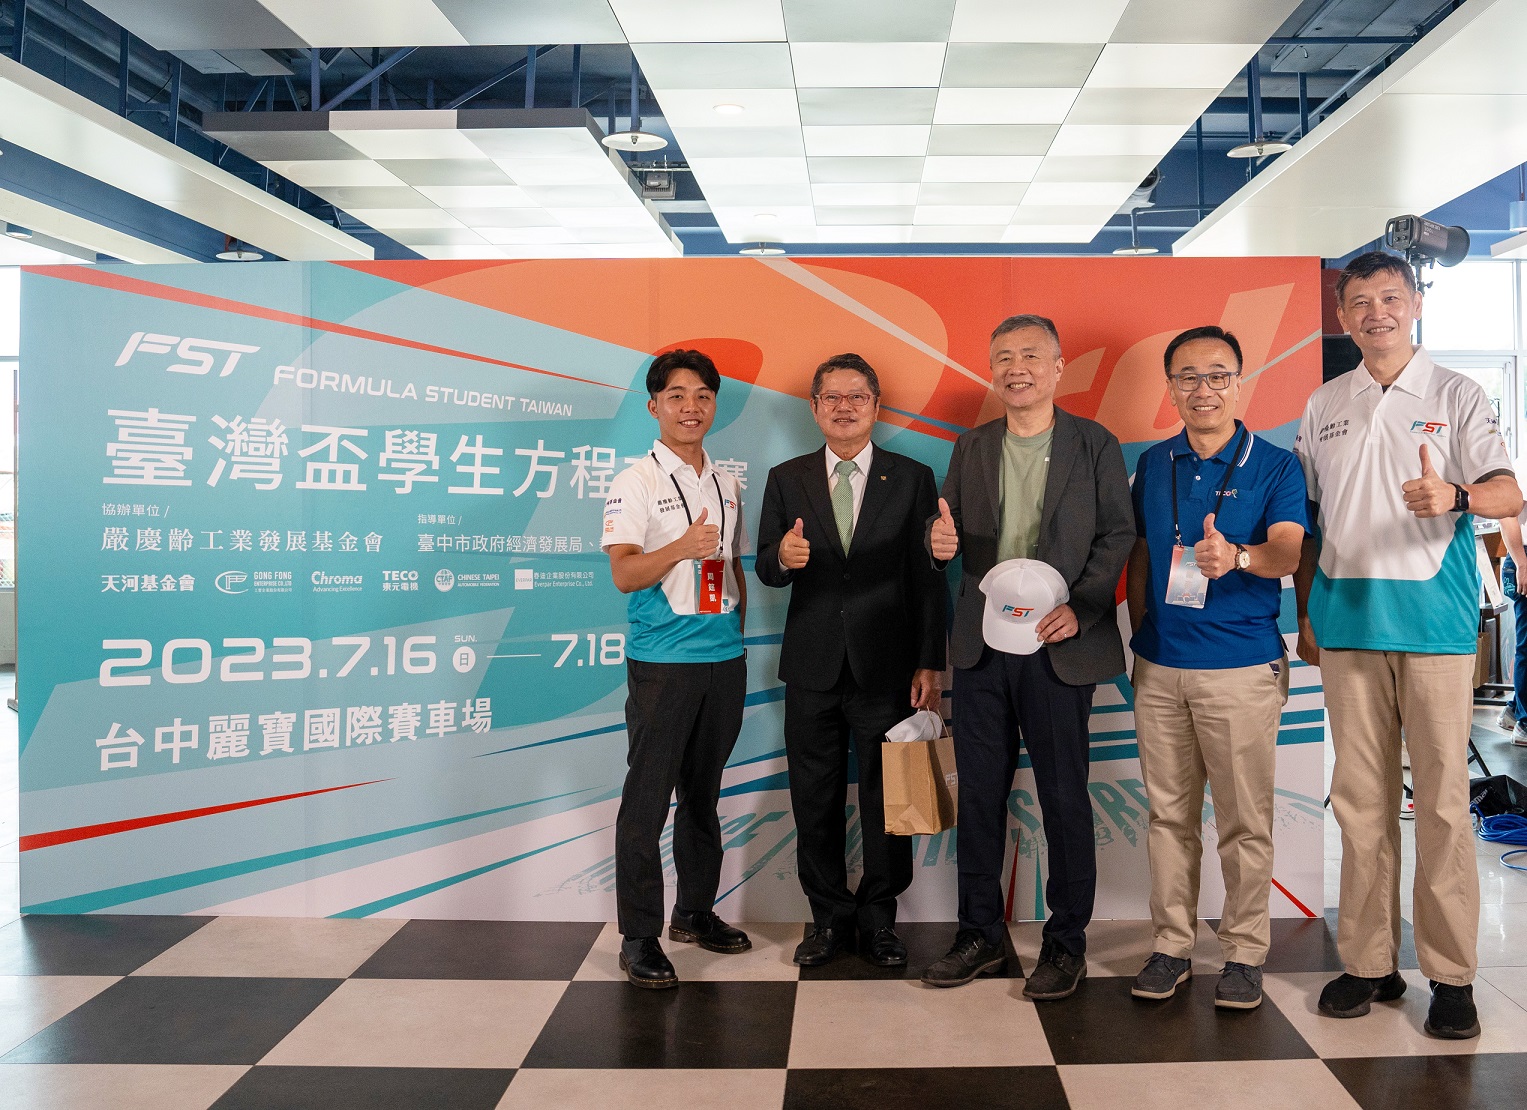 東元電機連續兩年 贊助FST台灣盃學生方程式